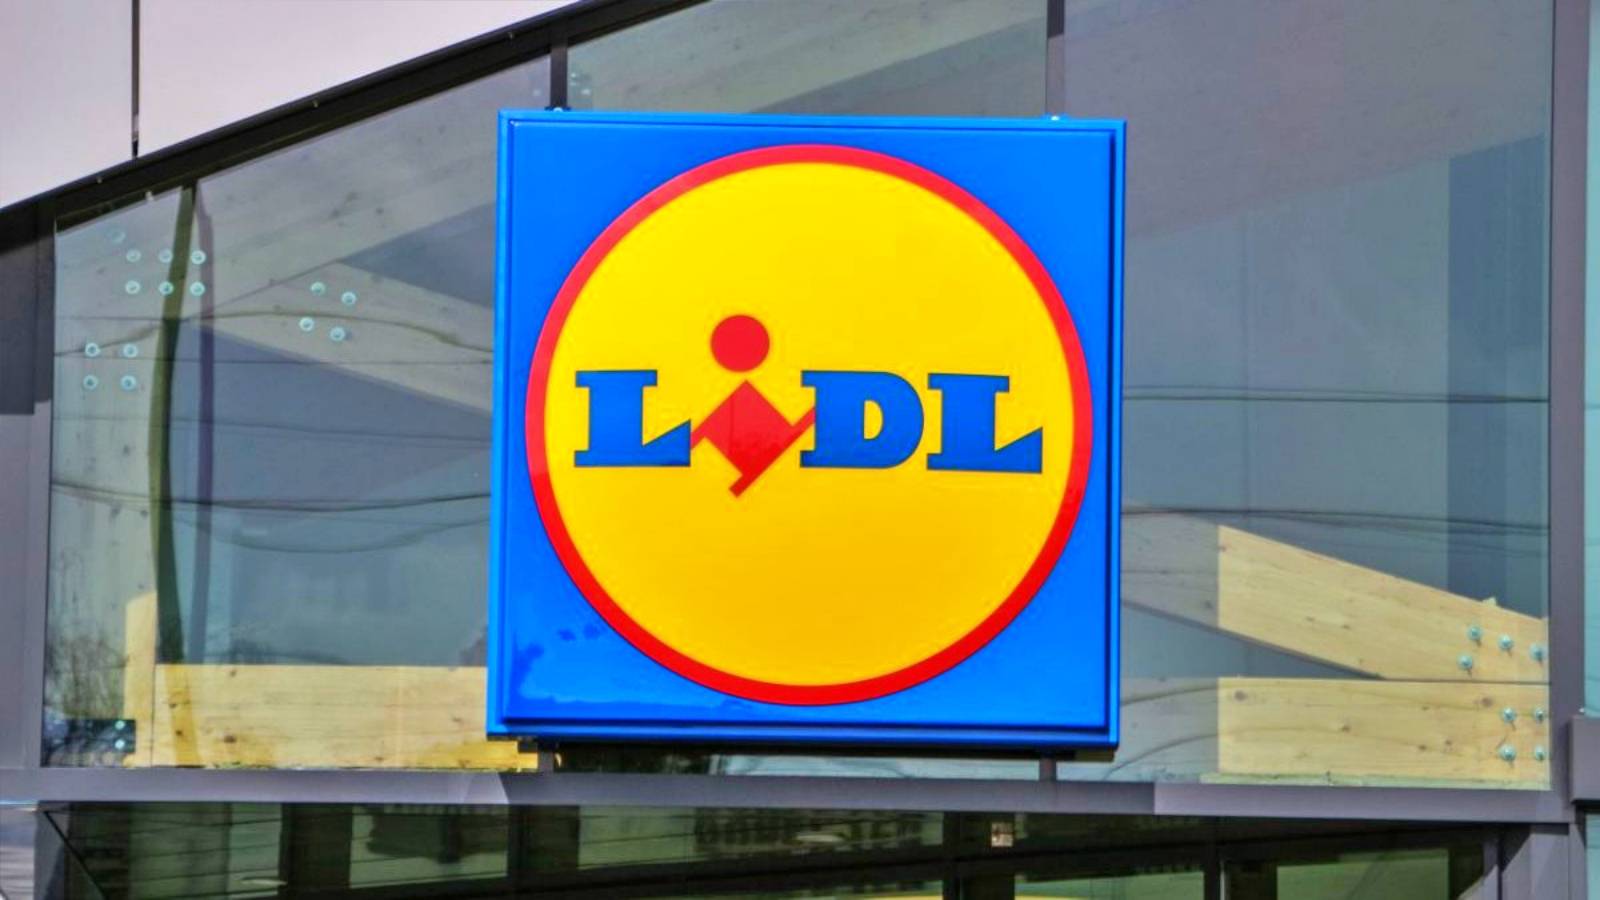 LIDL Rumania Todos los clientes rumanos informados sobre los nuevos cambios en la tienda